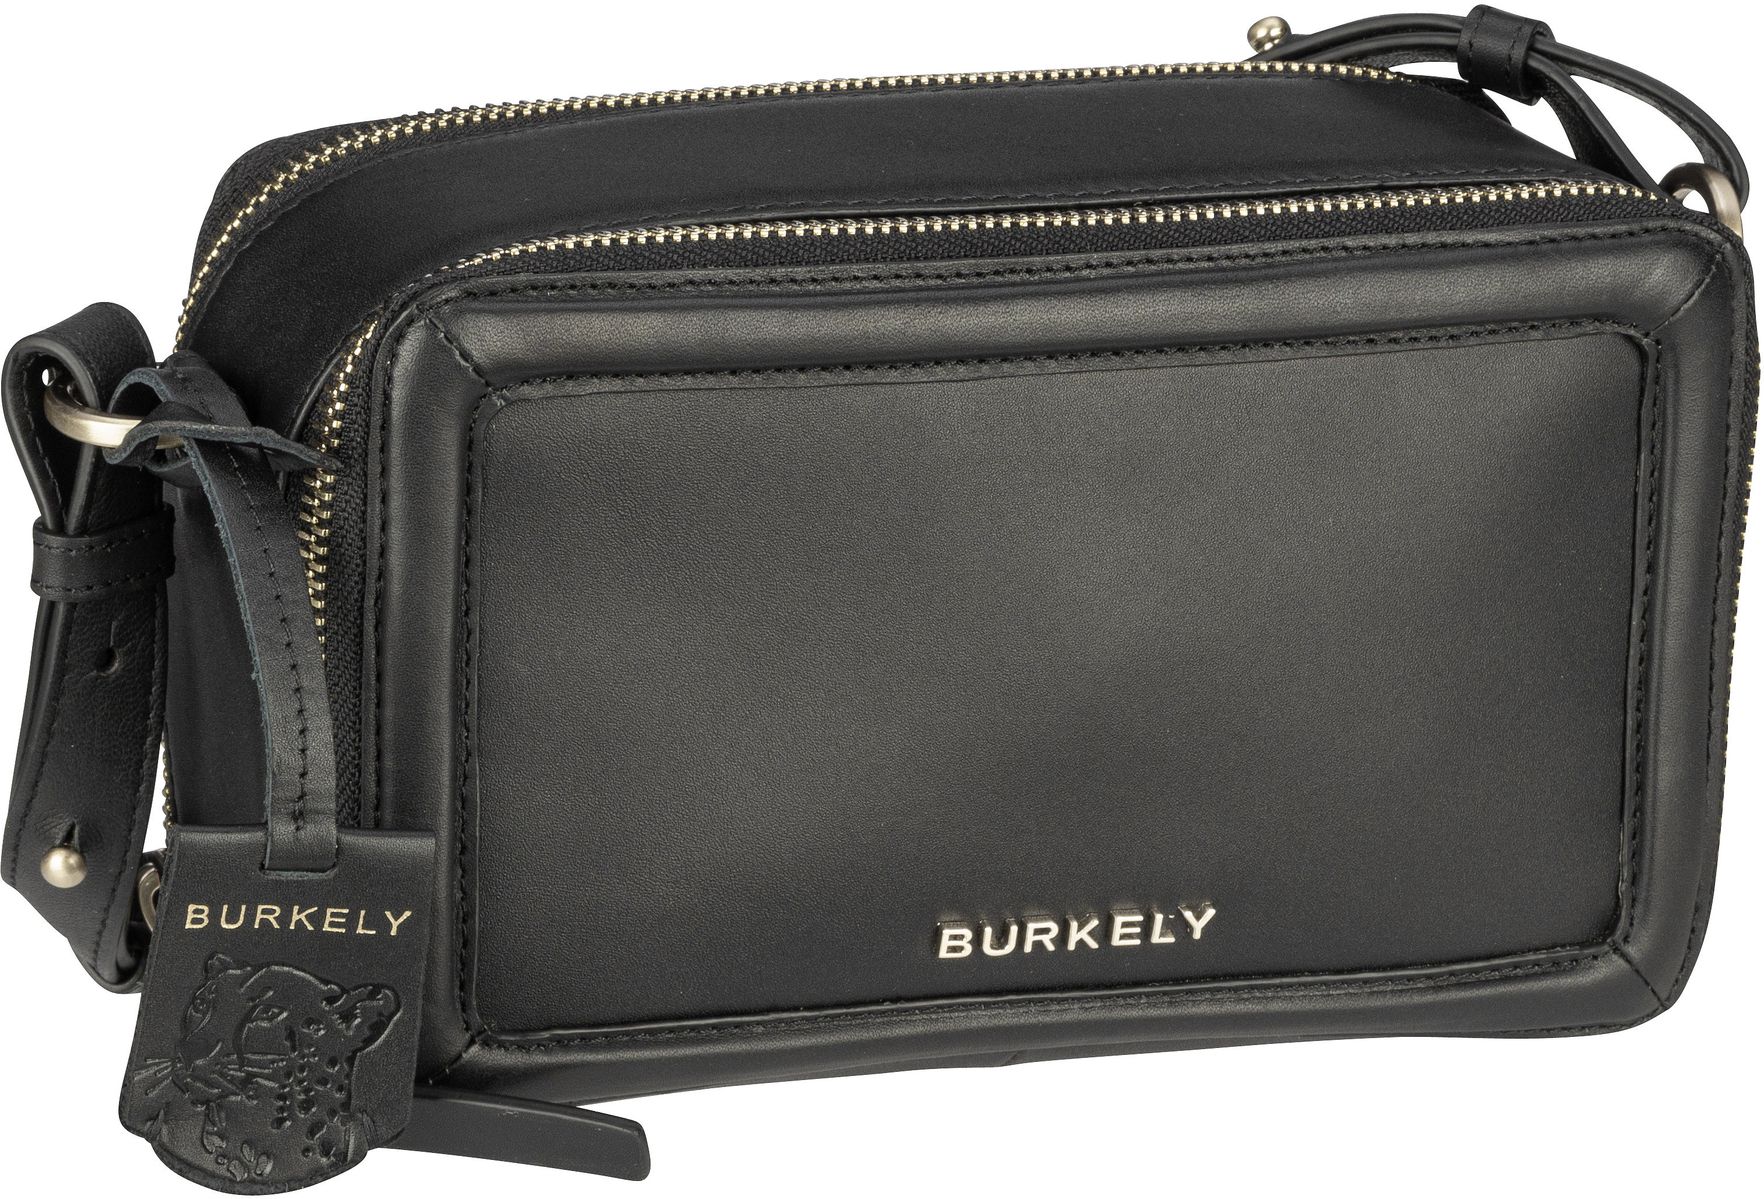 Burkely Beloved Bailey Box Bag - Black